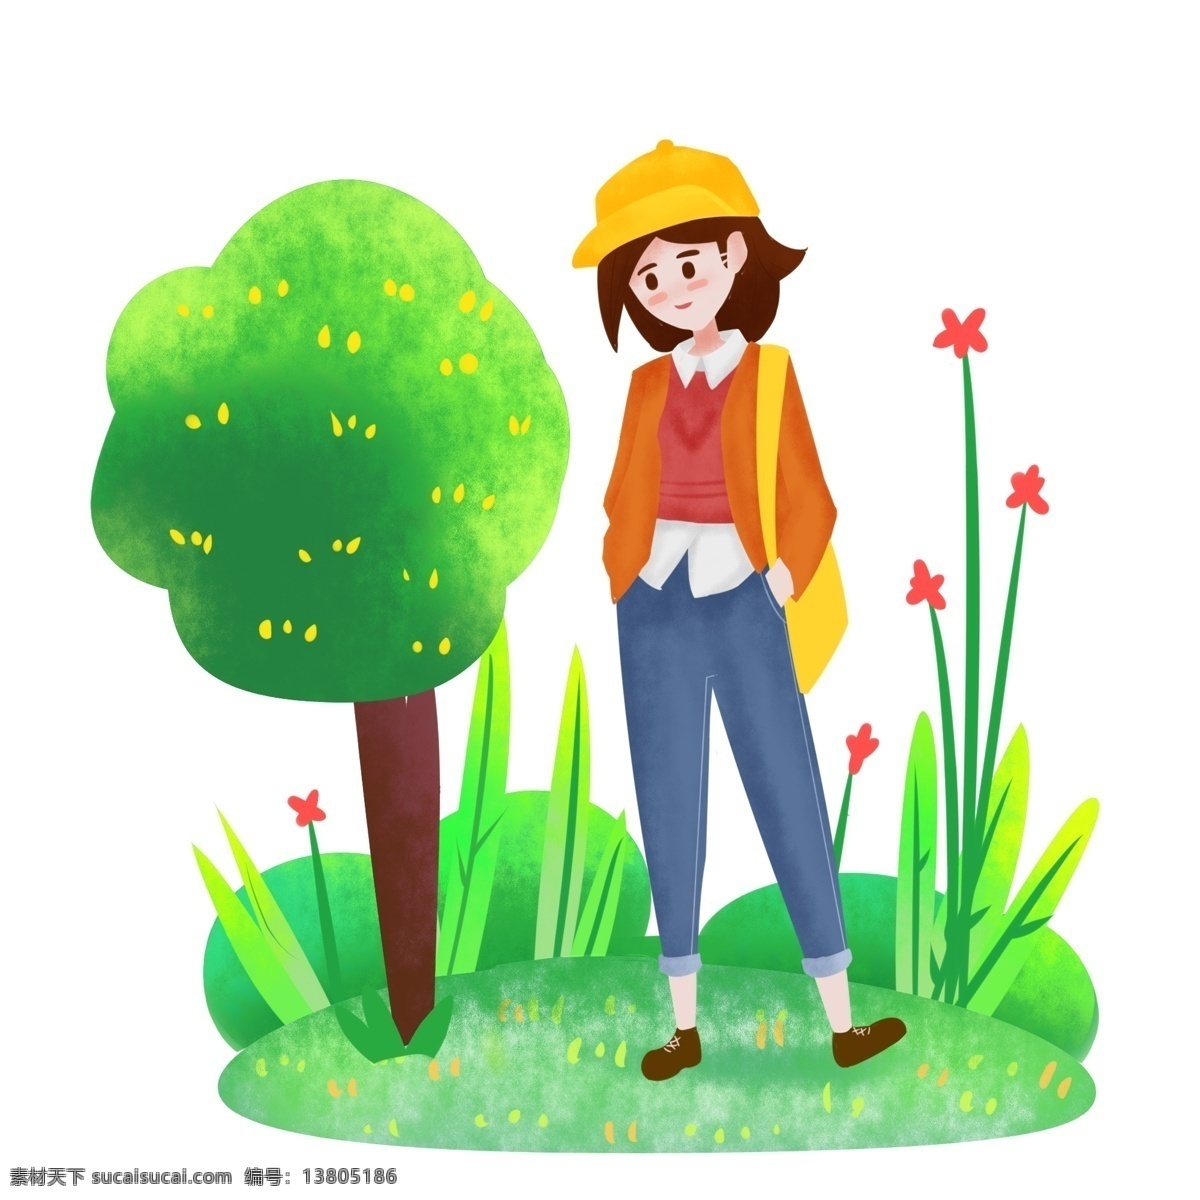 戴 小黄帽 春游 女孩 插画 春游的女孩 踏青 绿色植物装饰 黄色的小帽子 红色花枝 绿色小树 春天 春季